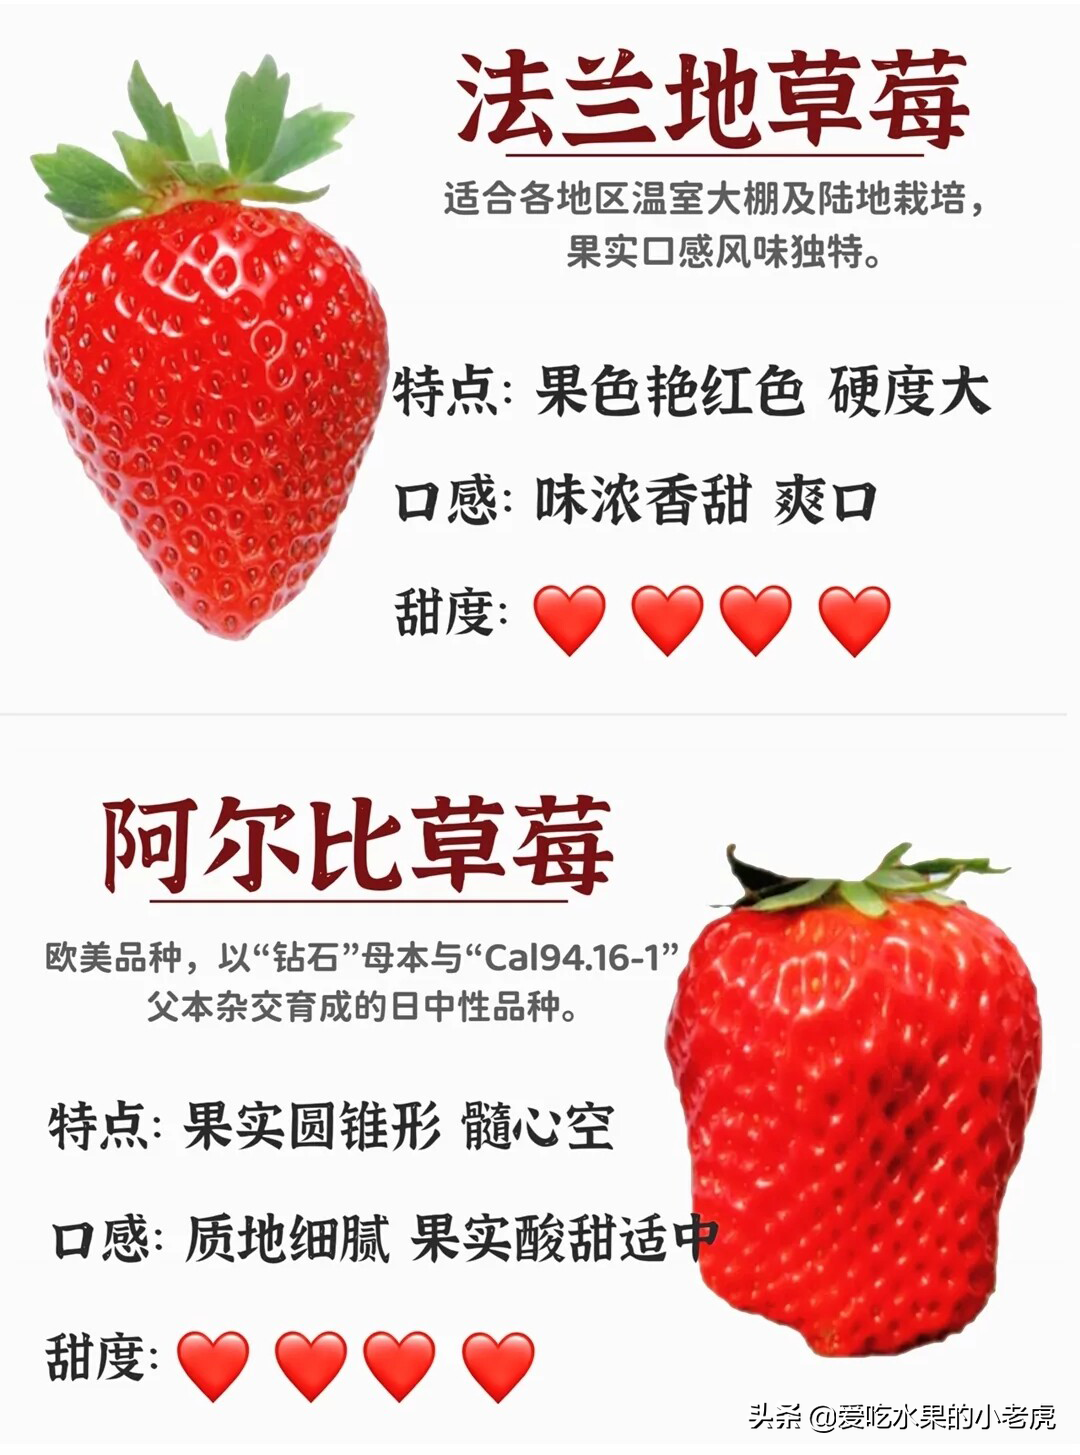 法兰地草莓品种介绍图片